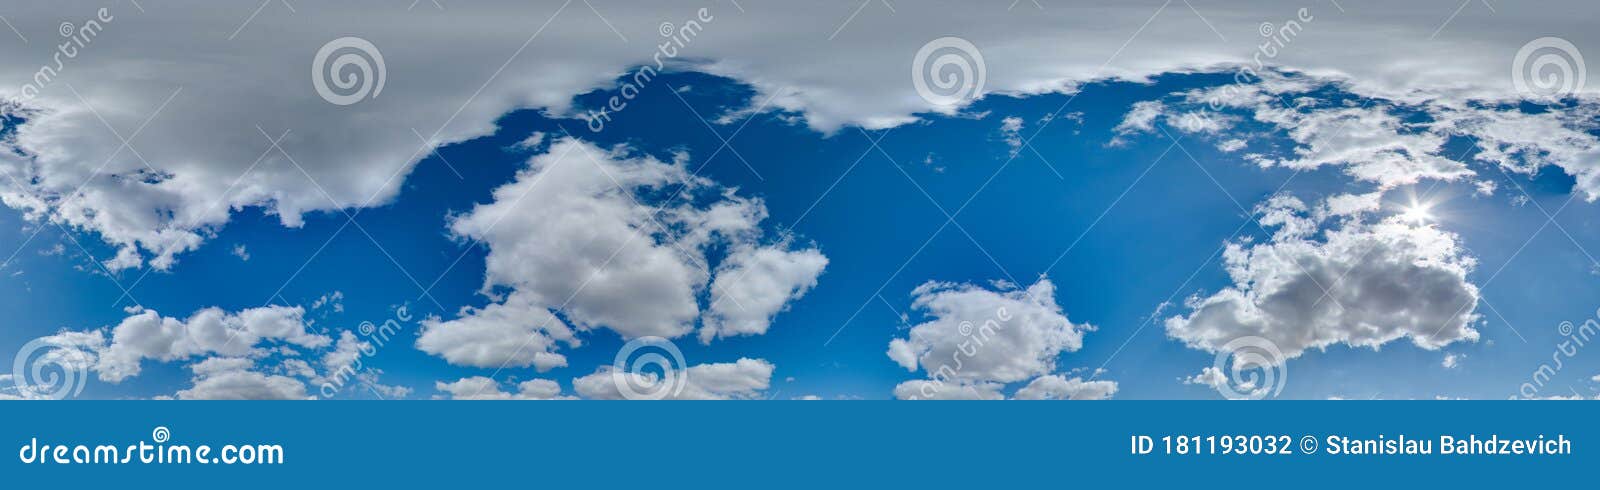 Dành cho những ai yêu thích bầu trời 360 độ với mây và mặt trời, những hình ảnh động mang tên \